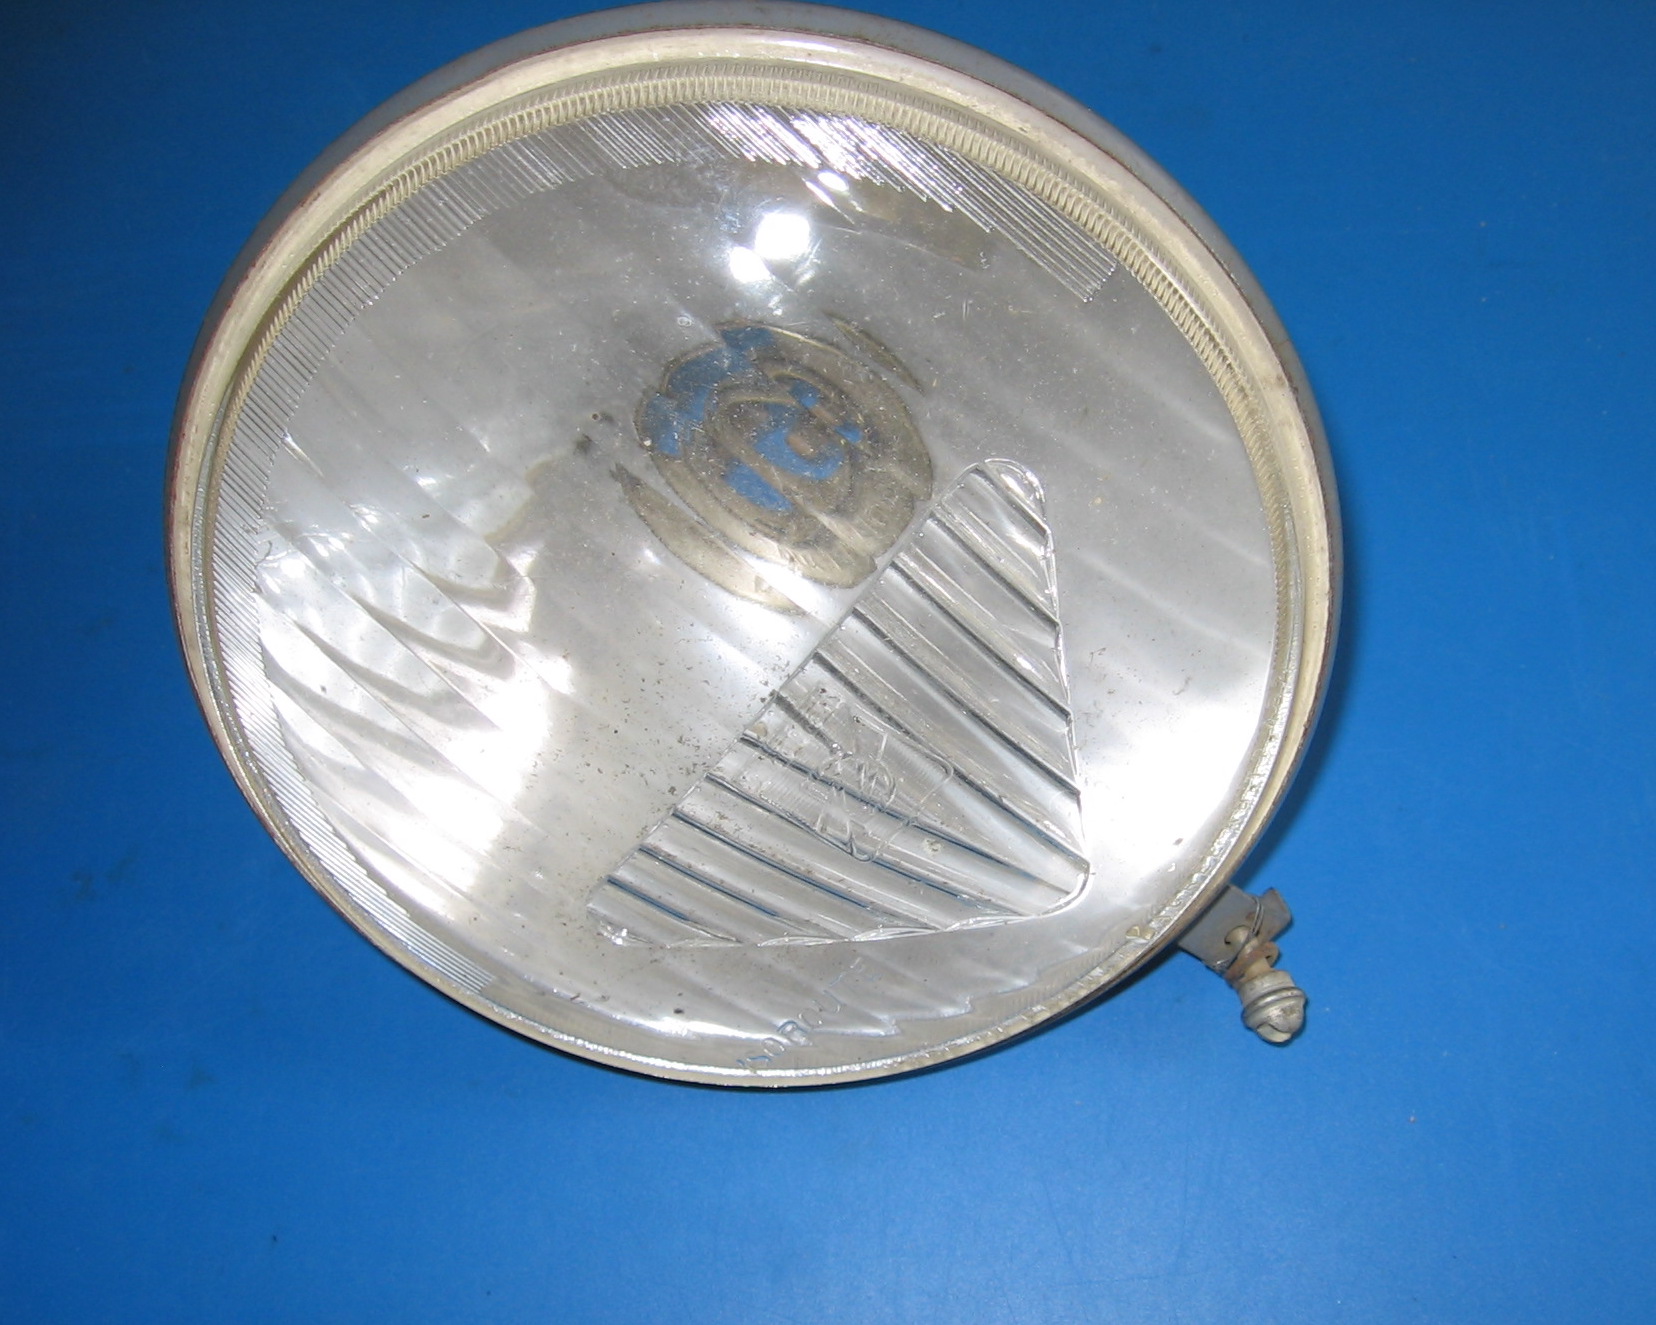 OD0637 Koplampreflector, voor 2cv van jaren '60. Merk: Ducellier. Type: Isoroute. Met vast bevestings-steuntje onder. NOS.